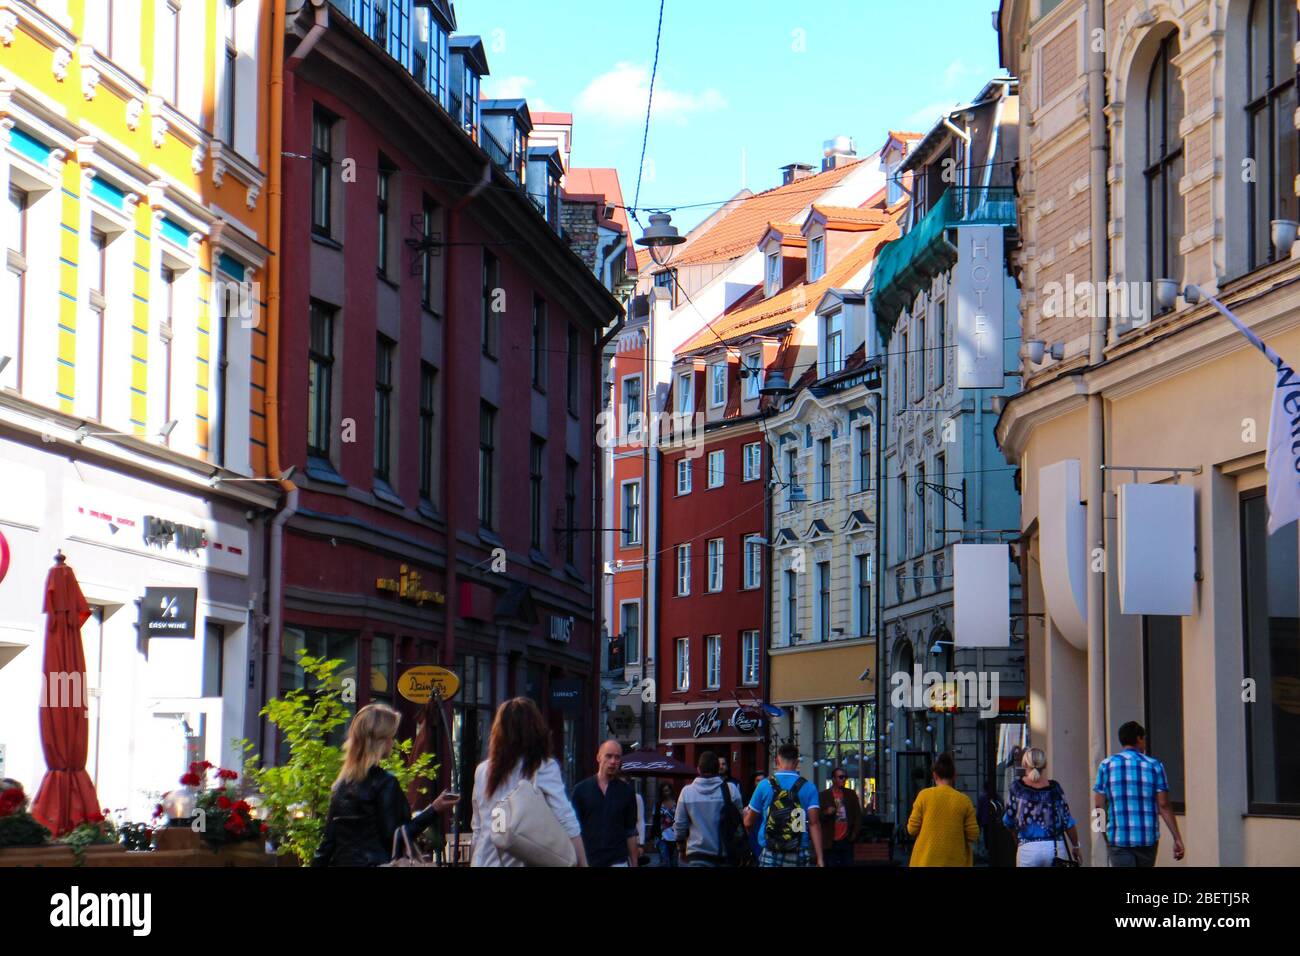 Straßenszene mit bunten alten Gebäuden in der Altstadt von Riga, der Hauptstadt Lettlands. Stockfoto